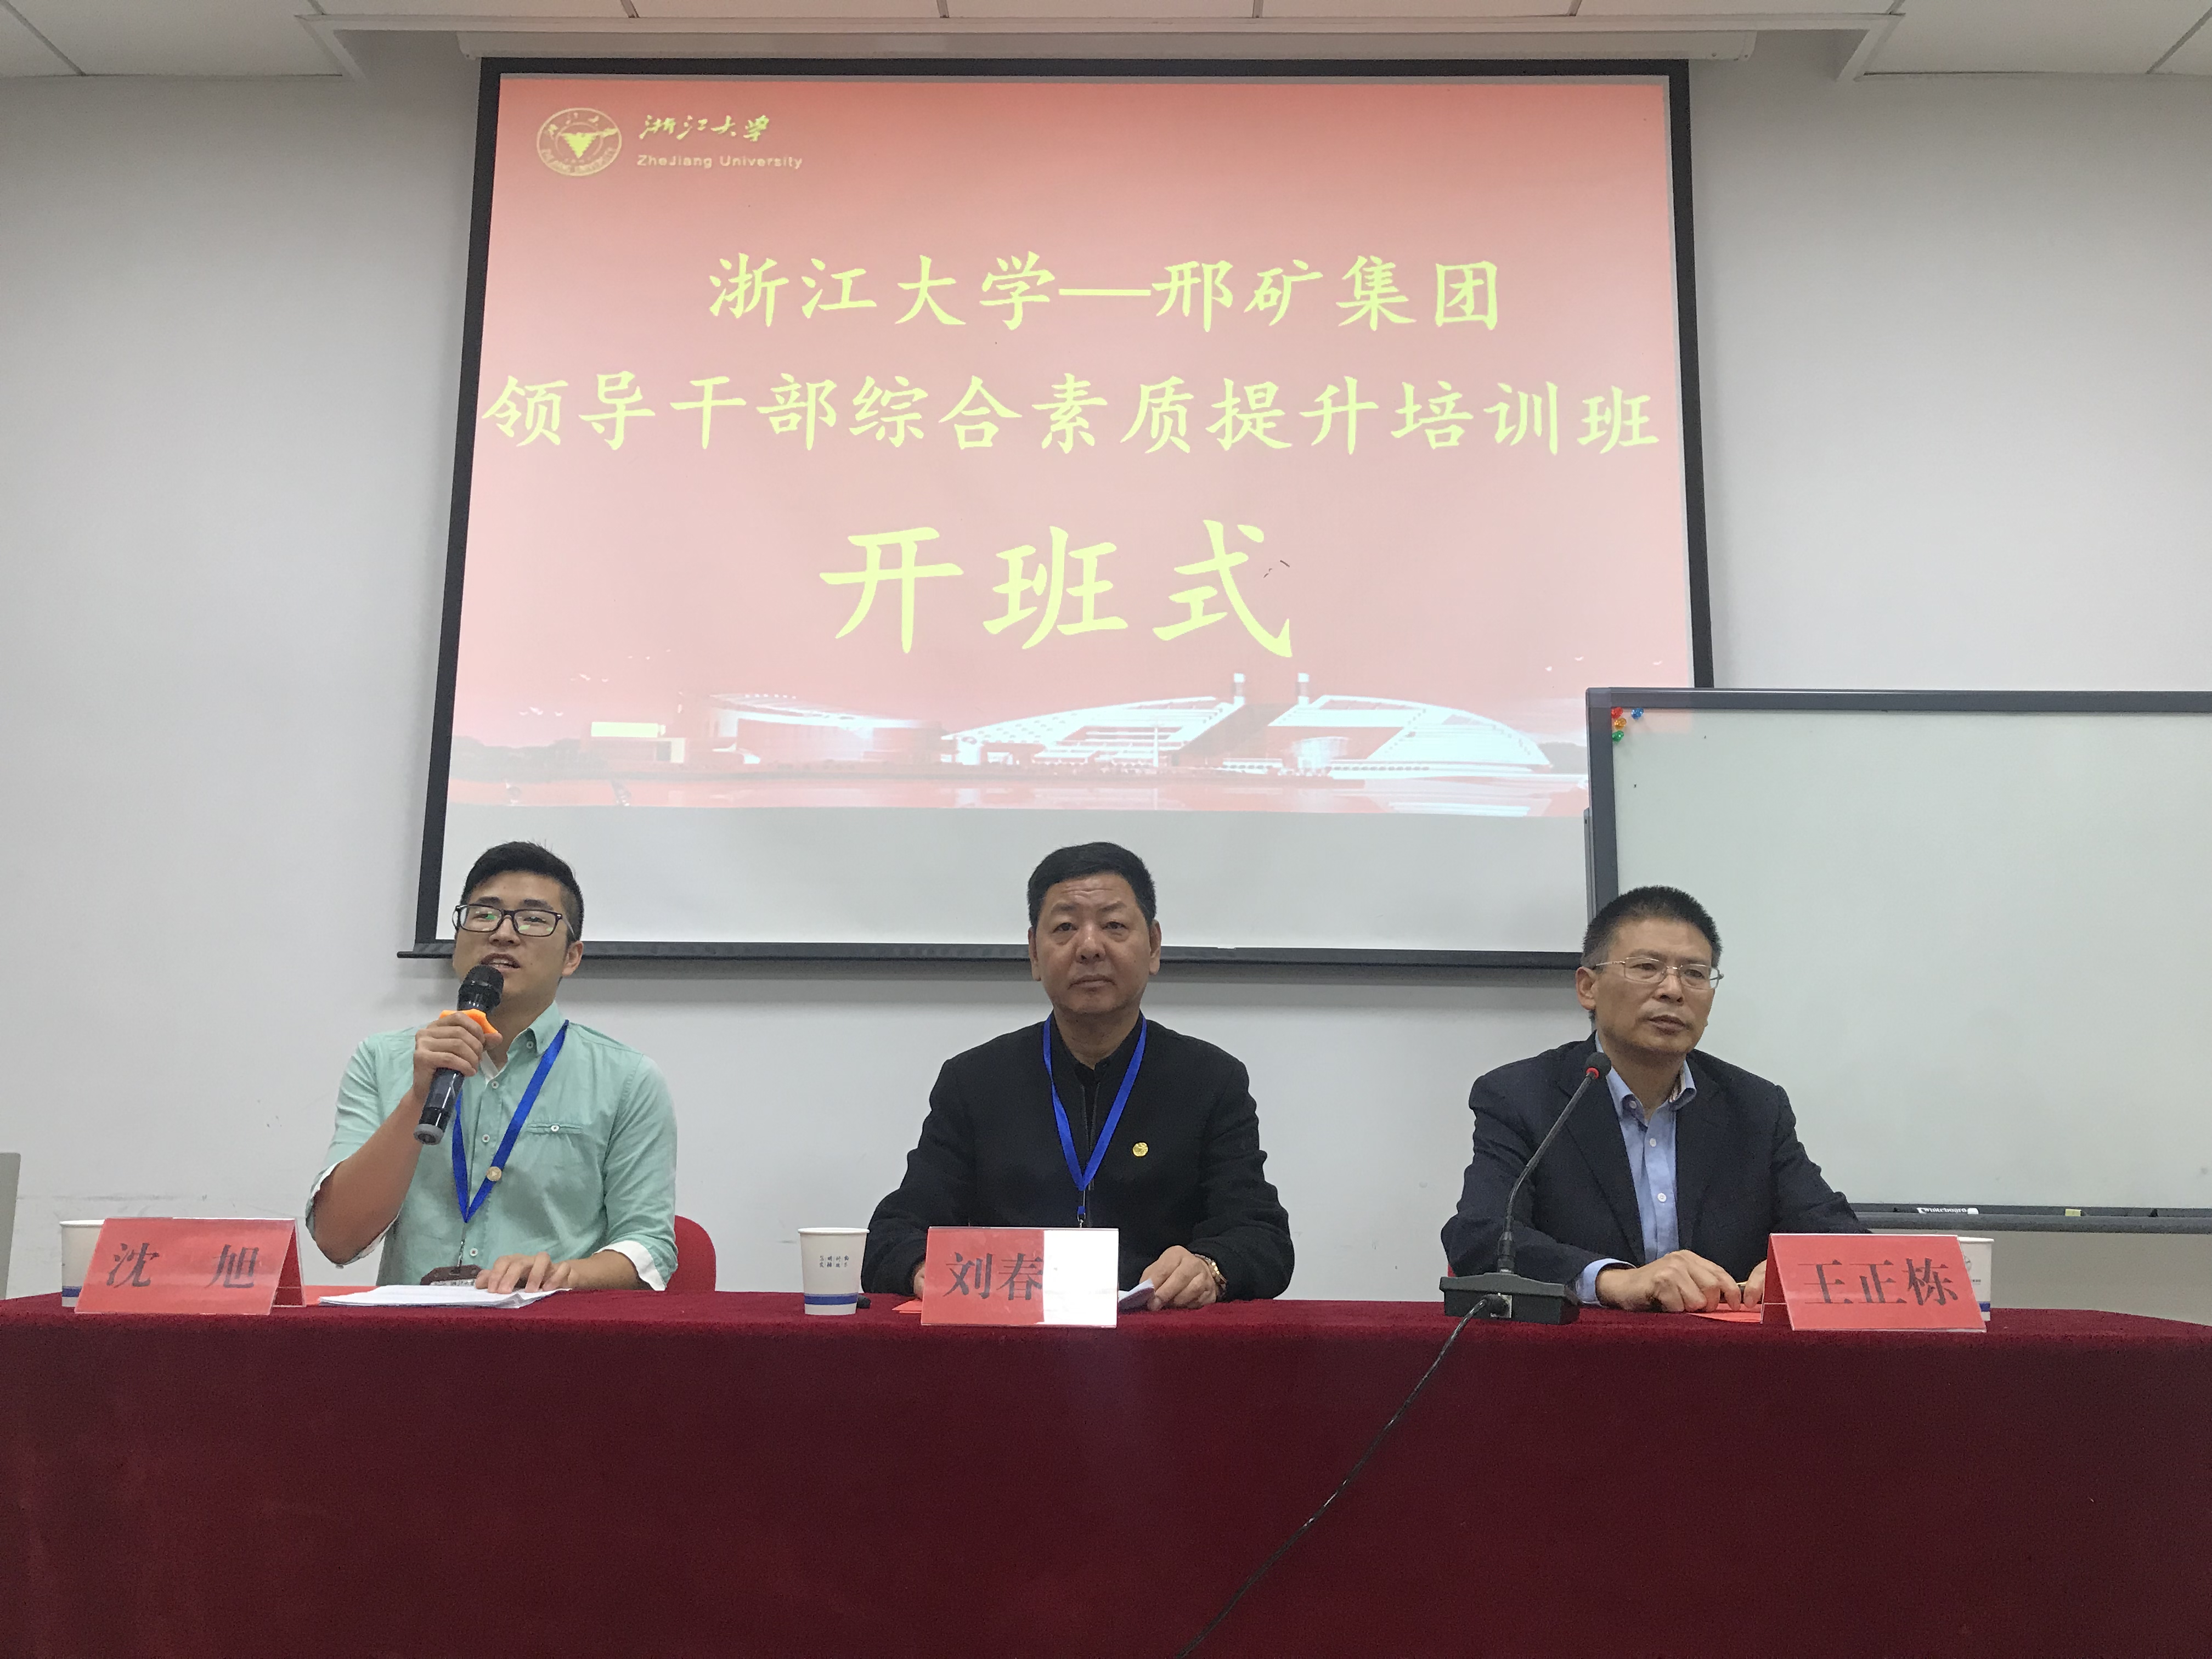 冀中能源邢矿集团领导干部能力提升培训班在浙大举办